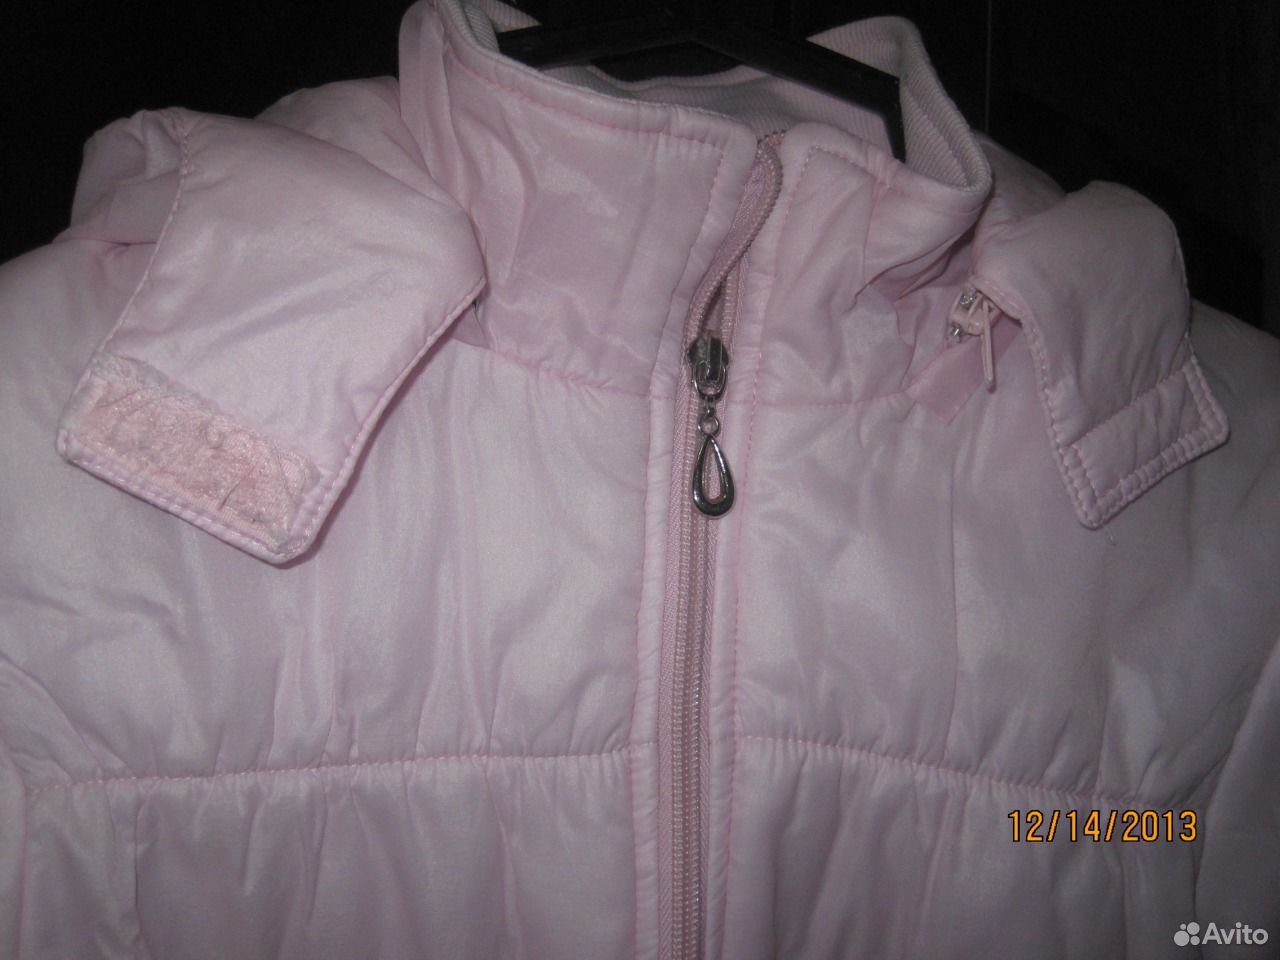 Авито куртка 140. Для девочек куртку с капюшоном розовую. Розовая куртка с белыми бантами детская. Кико розовая куртка. ТМ GNK белая куртка и розовый комбинезон.